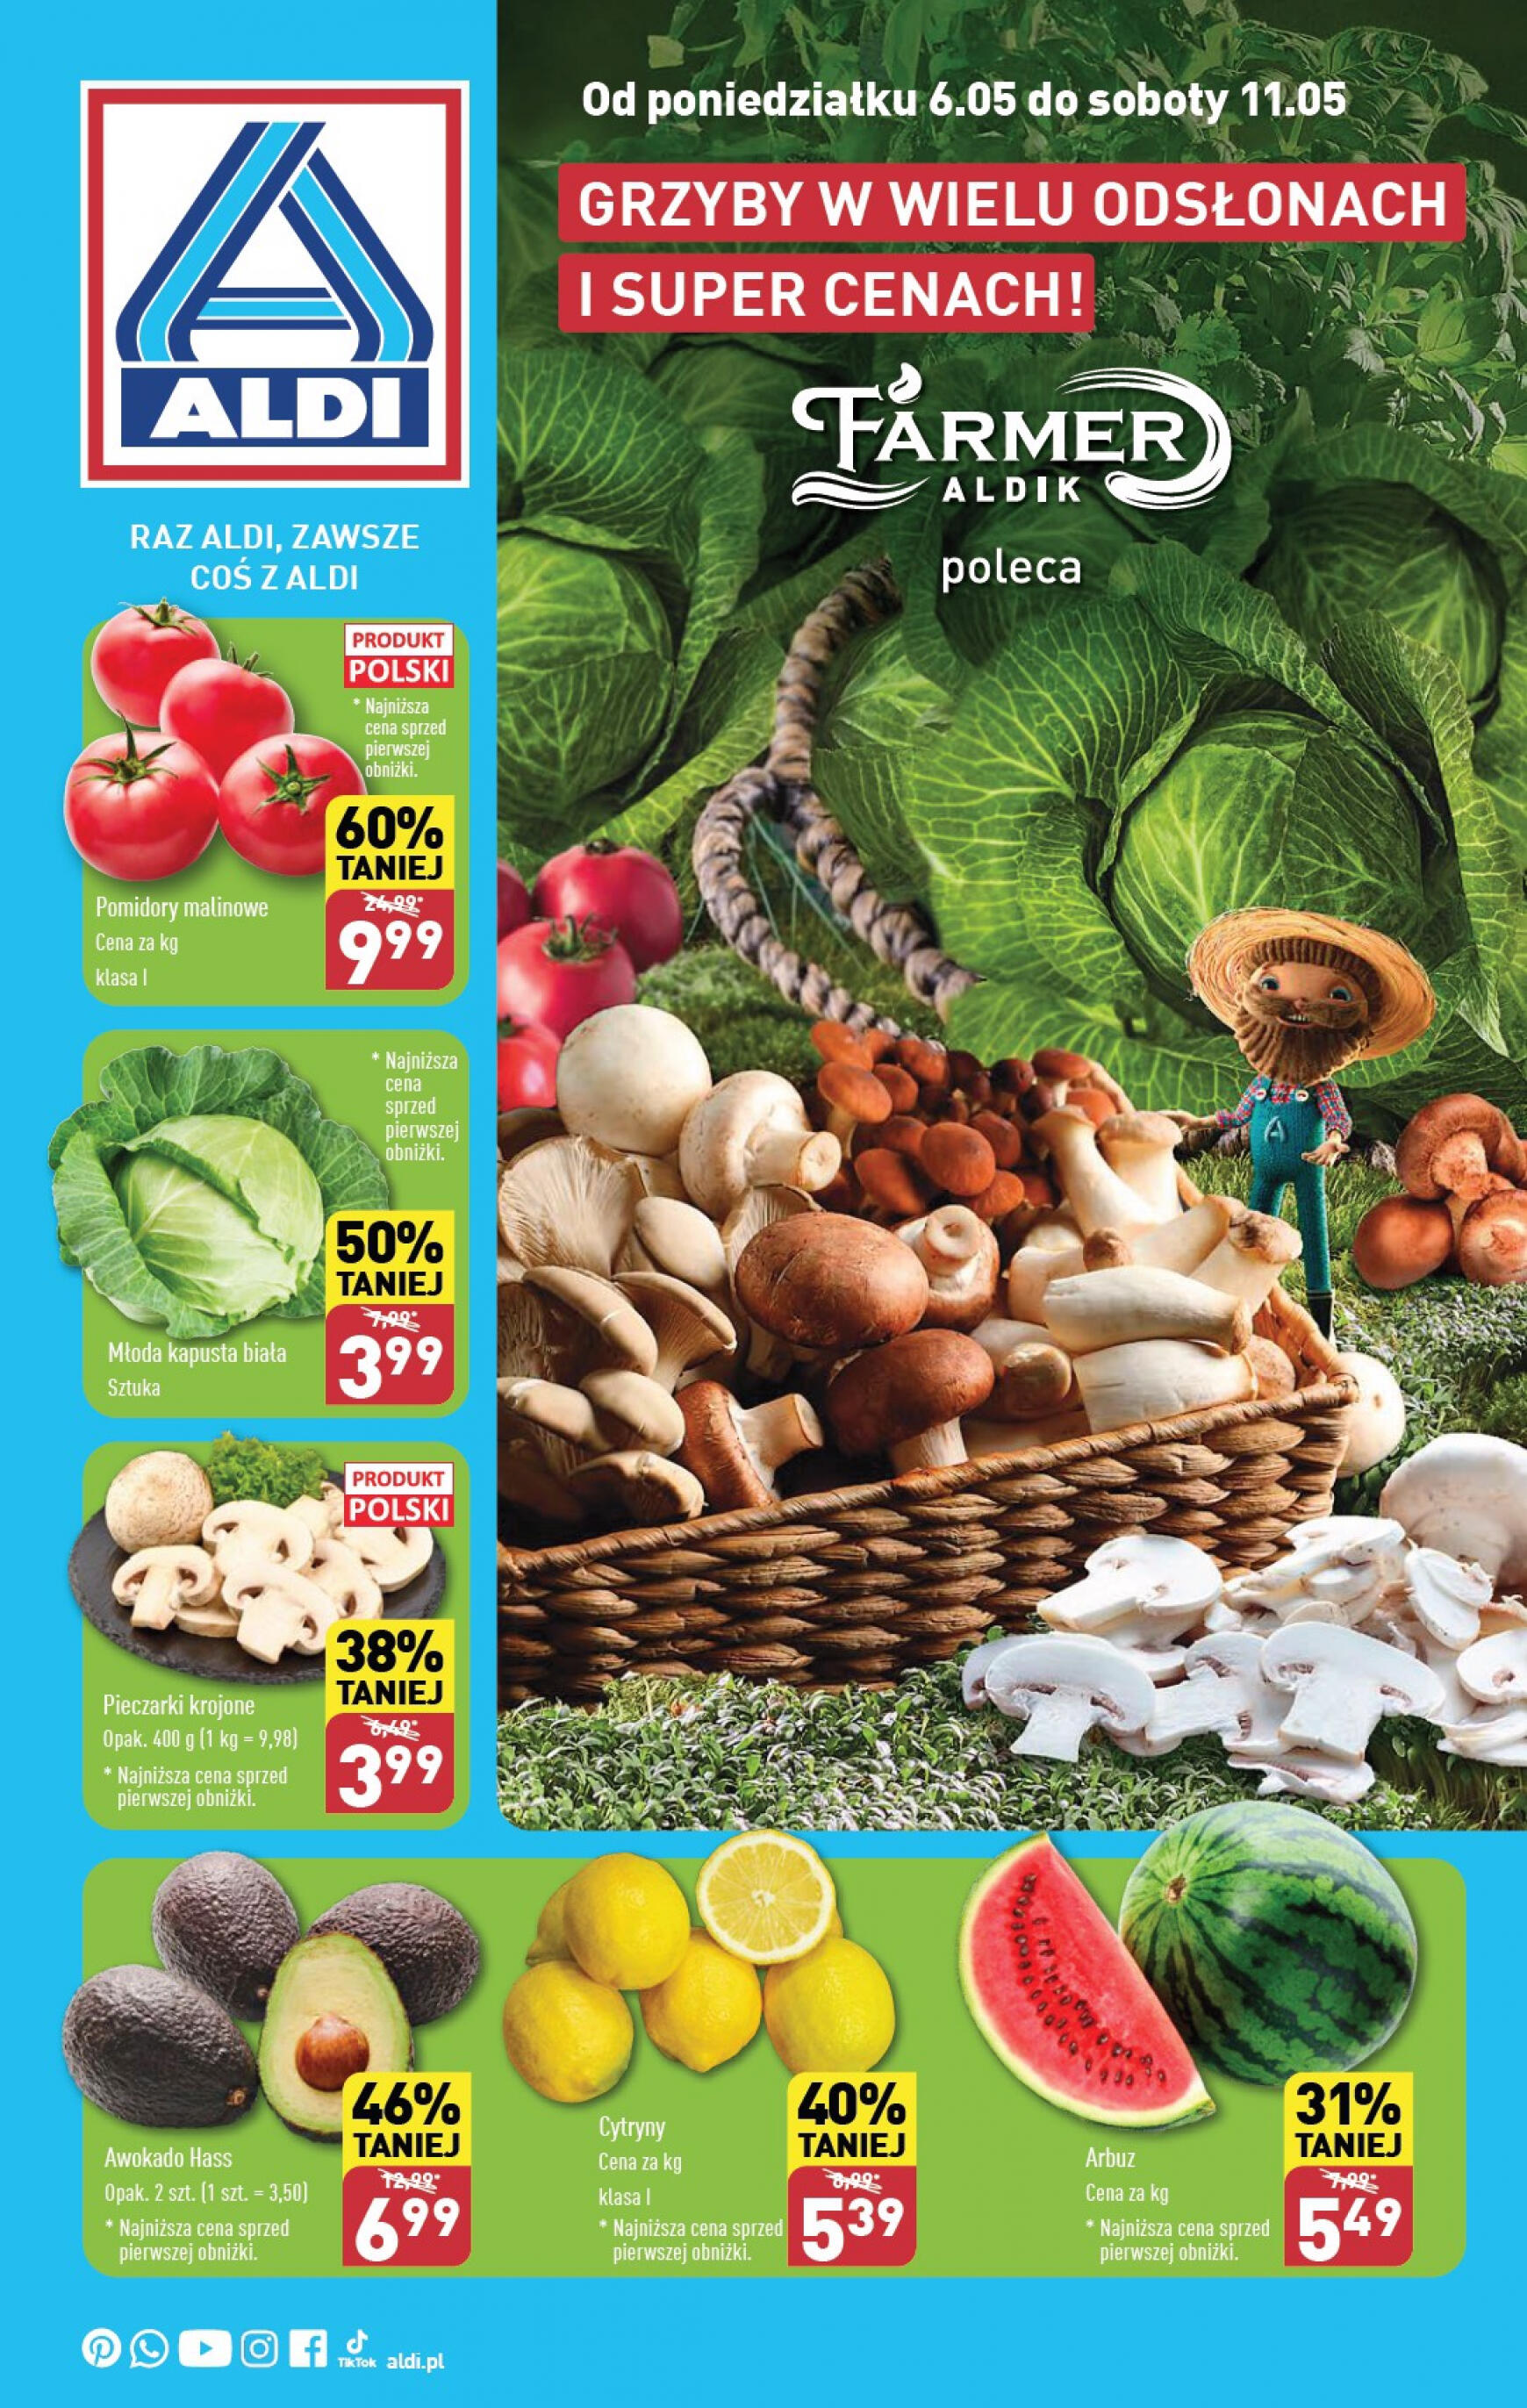 aldi - ALDI - Farmer ALDIK poleca świeże owoce i warzywa gazetka aktualna ważna od 06.05. - 11.05.